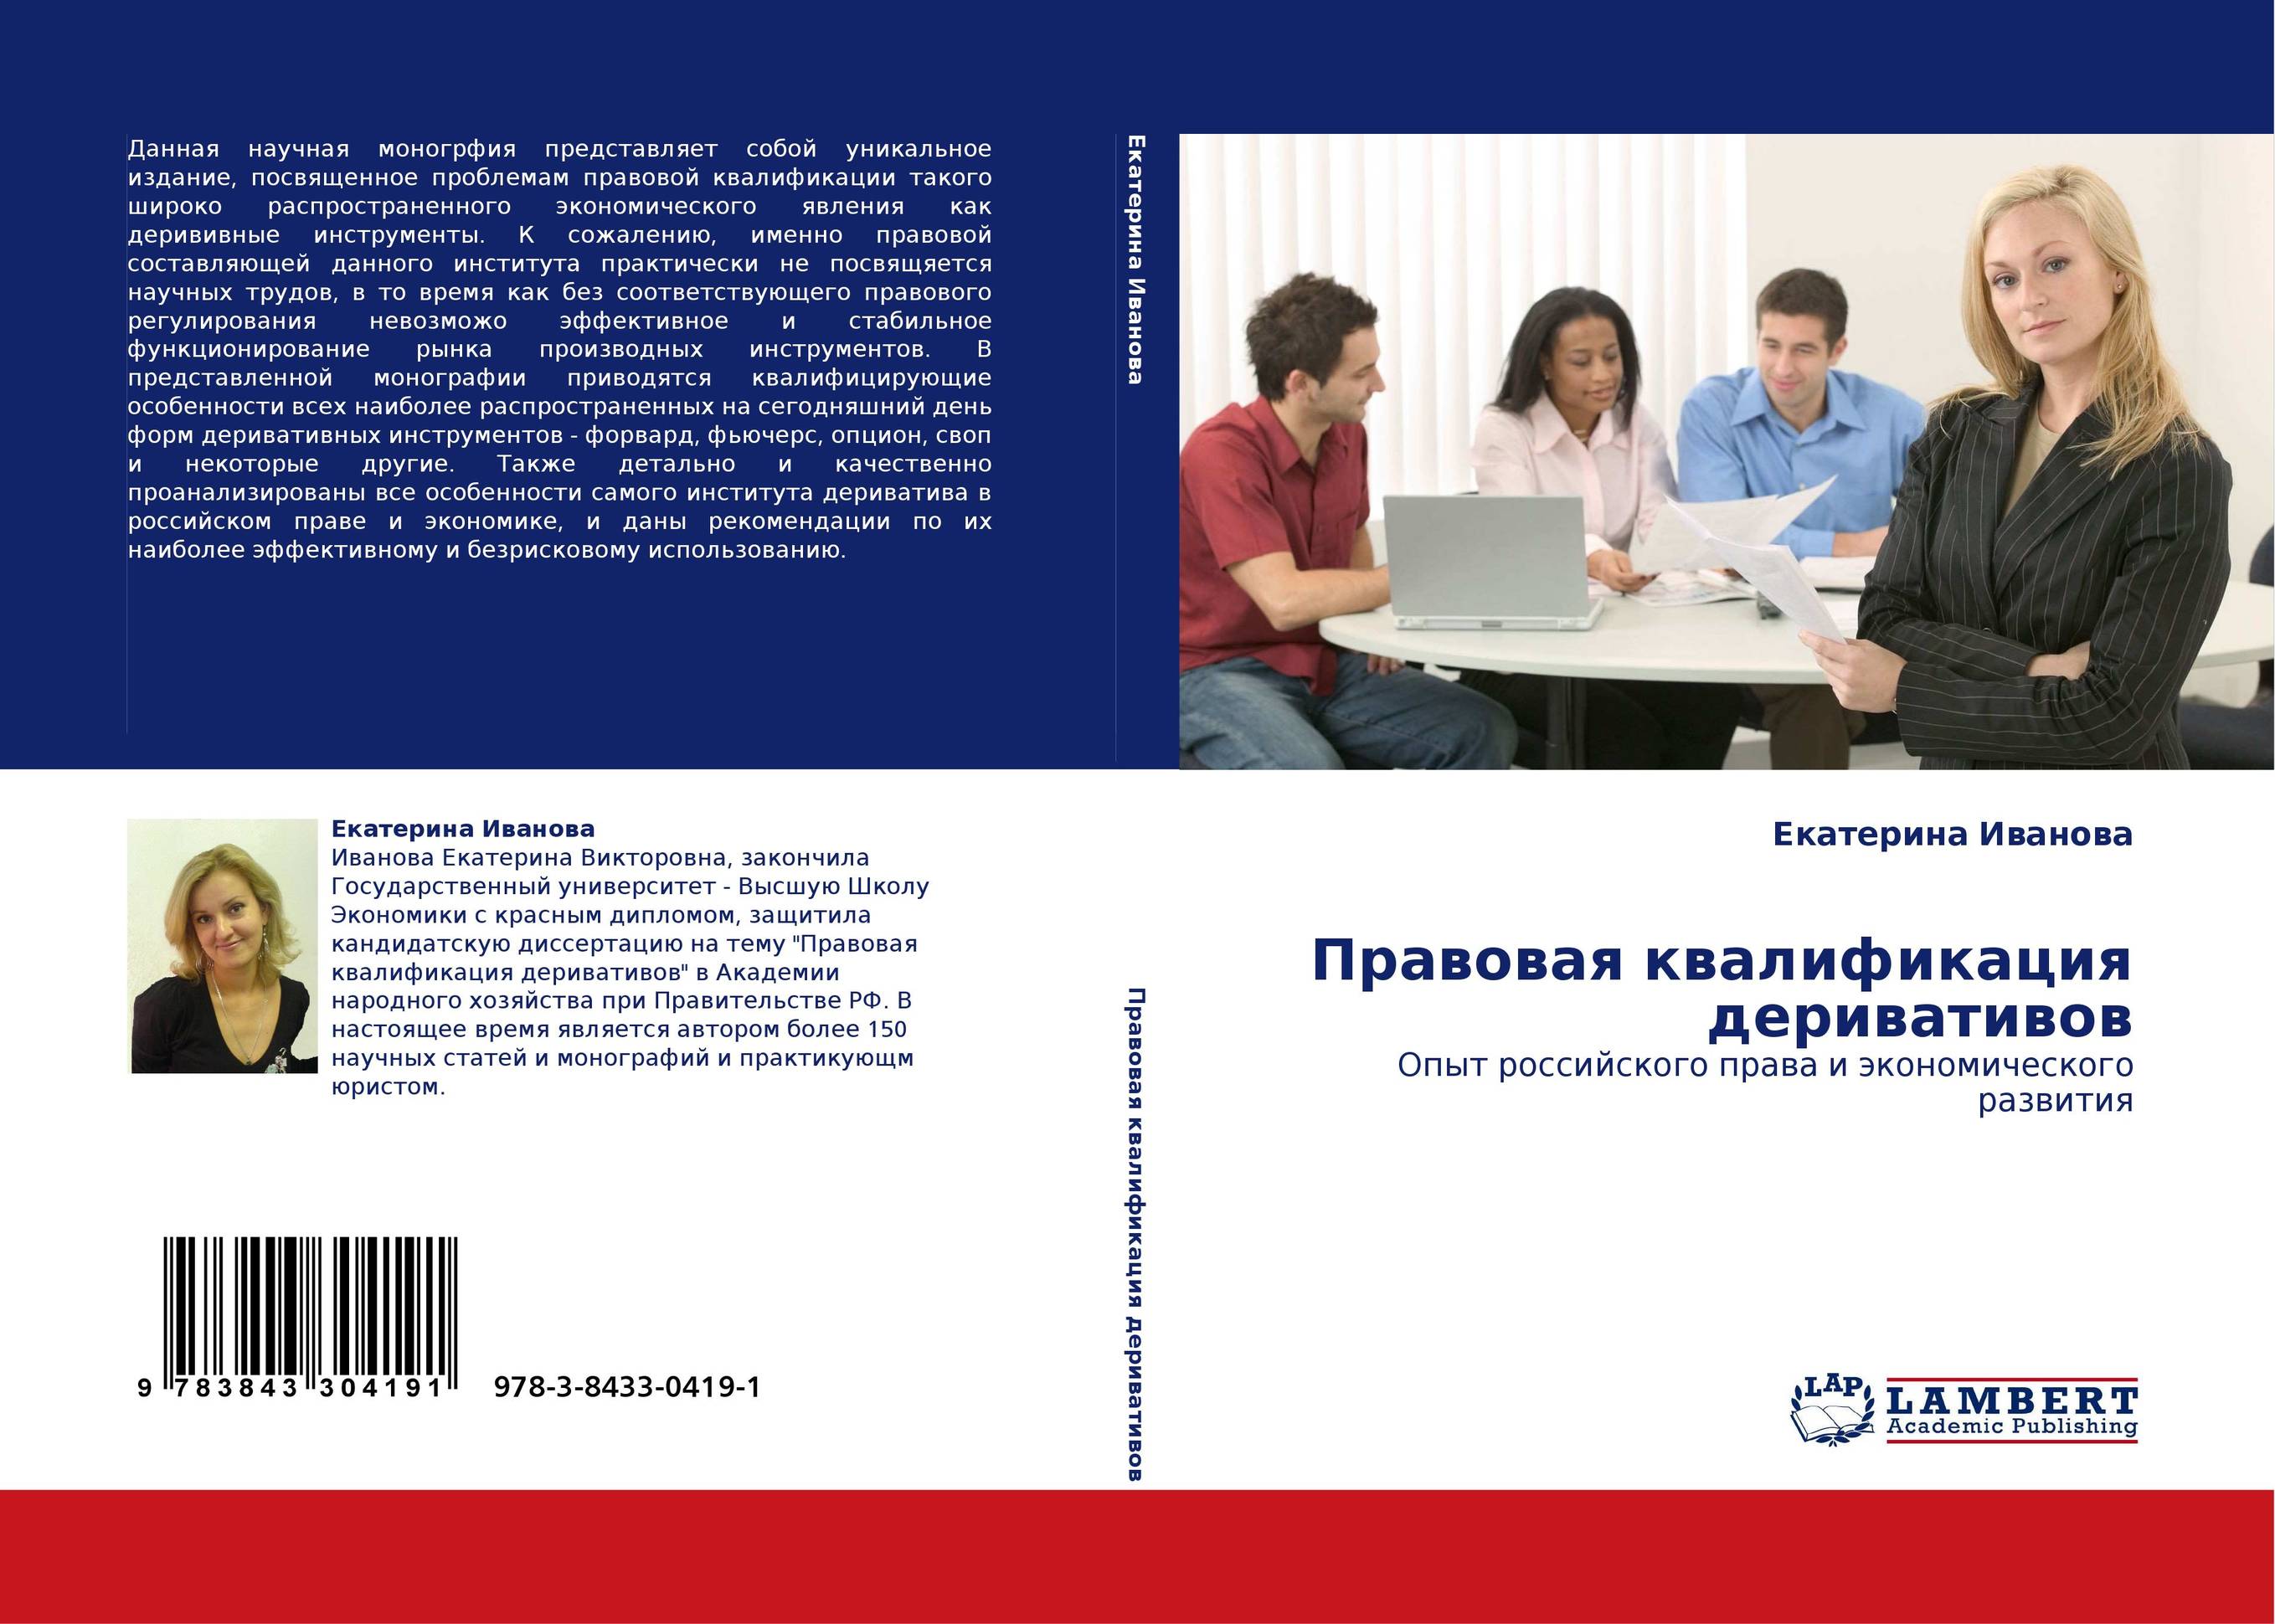 Правовая квалификация деривативов. Опыт российского права и экономического развития.